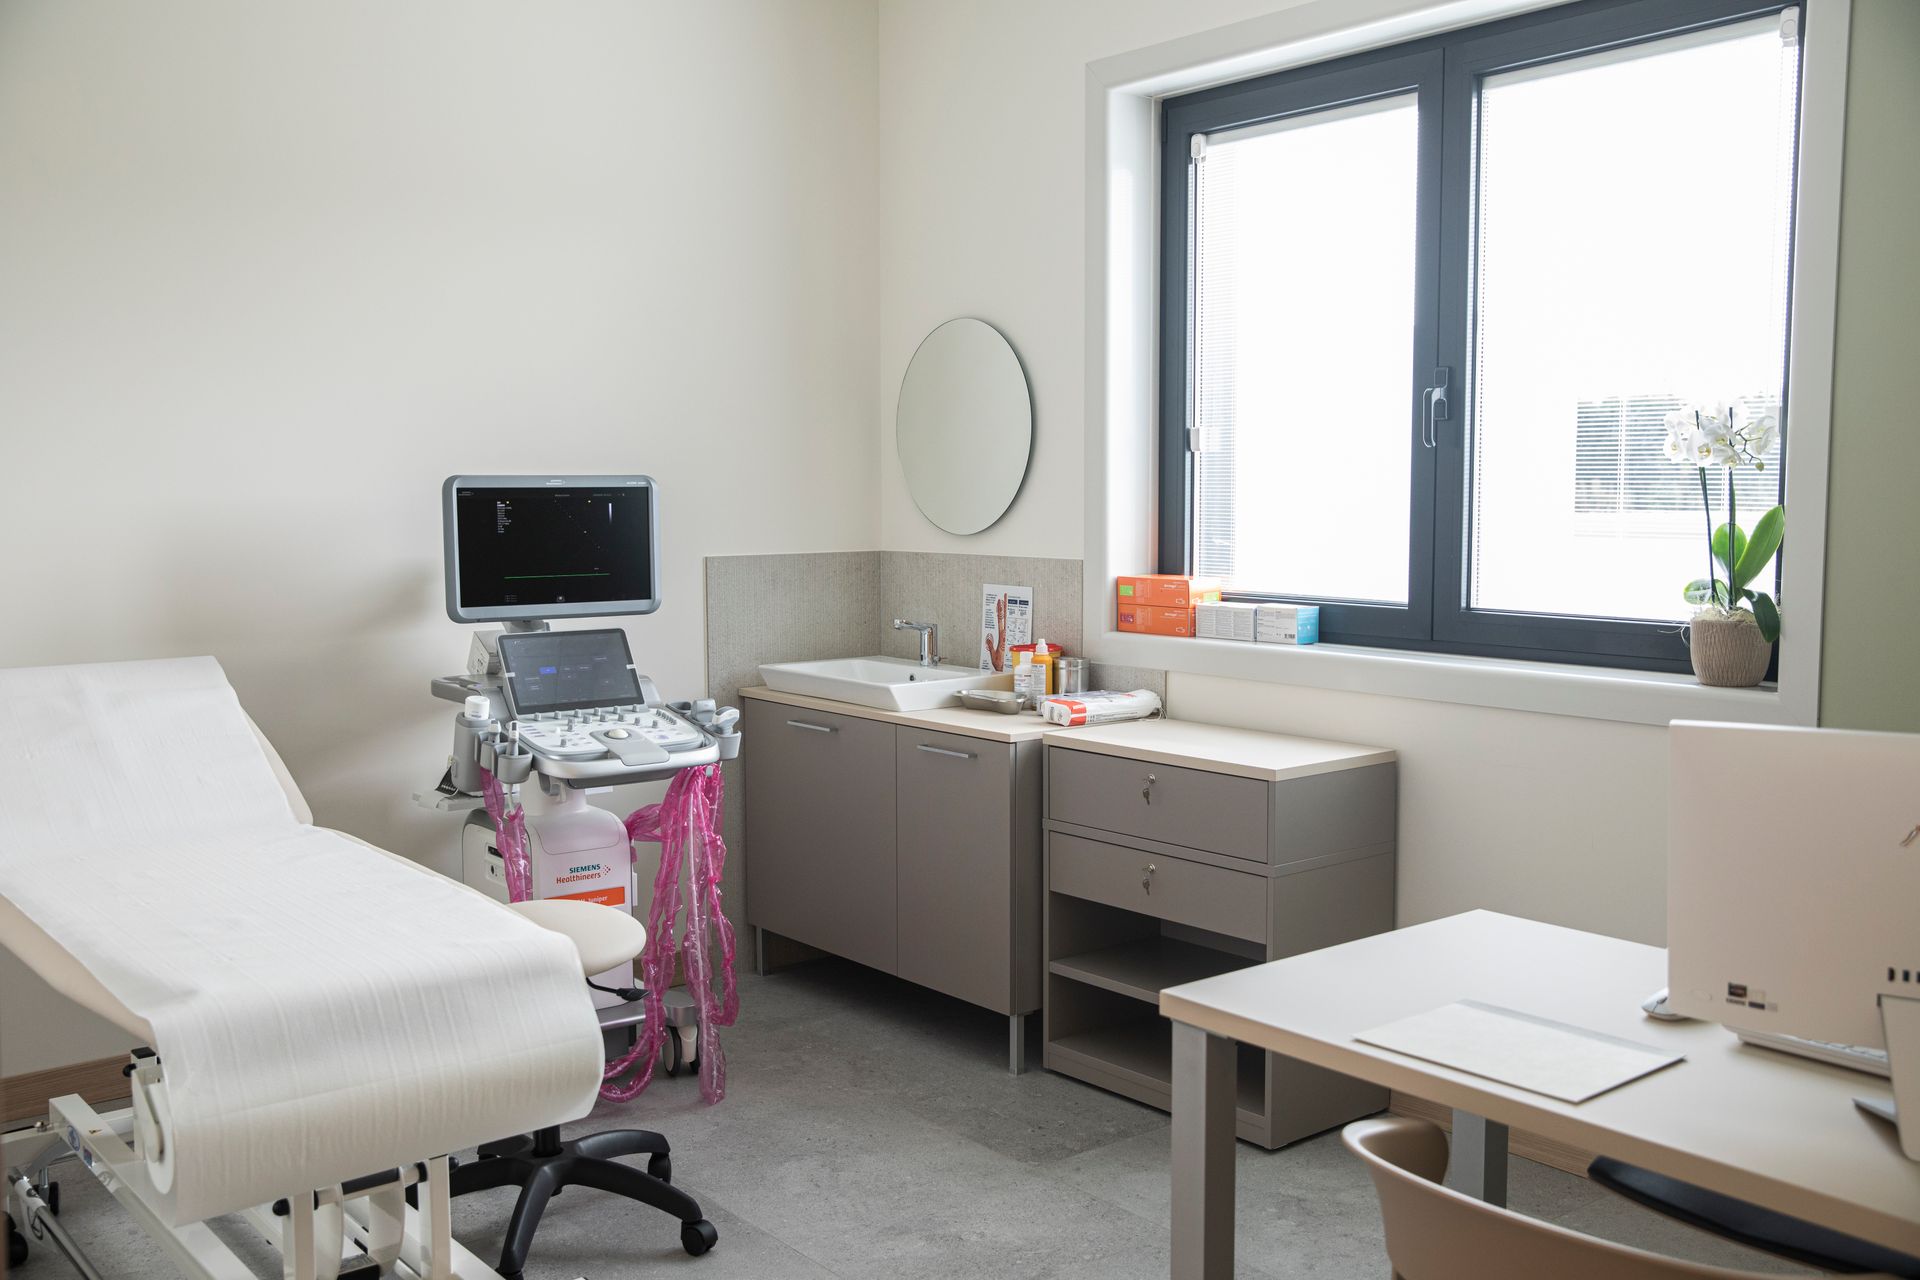 Il nuovo centro medico privato autorizzato "Medical Treviso - Salute in Movimento" sorge in Veneto a Dosson di Casier: il controllo dei parametri sanitari avviene via Khymeia VRRS